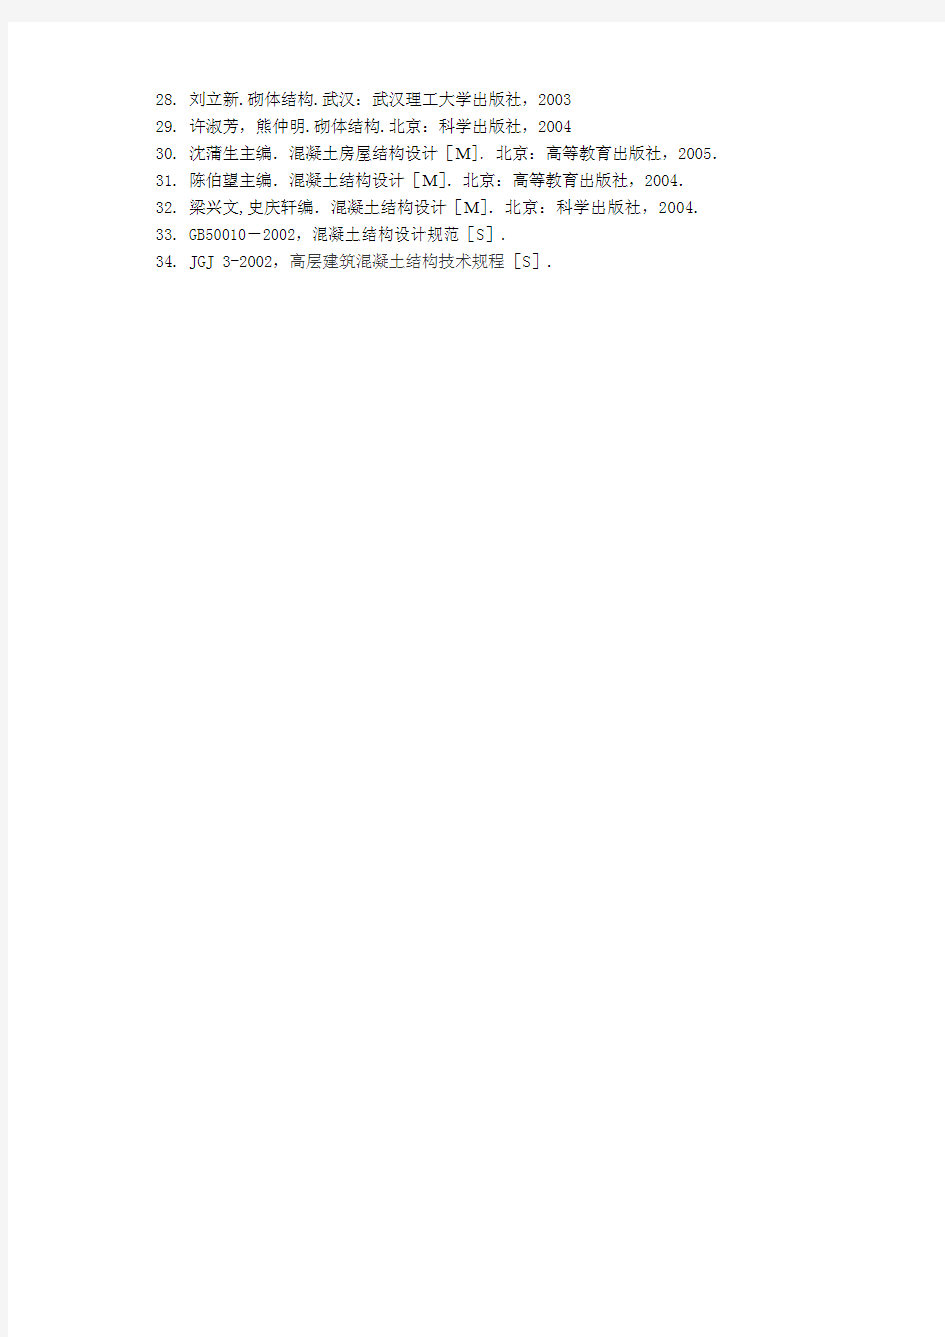 29 许淑芳,熊仲明 砌体结构 北京：科学出版社, 2004 …